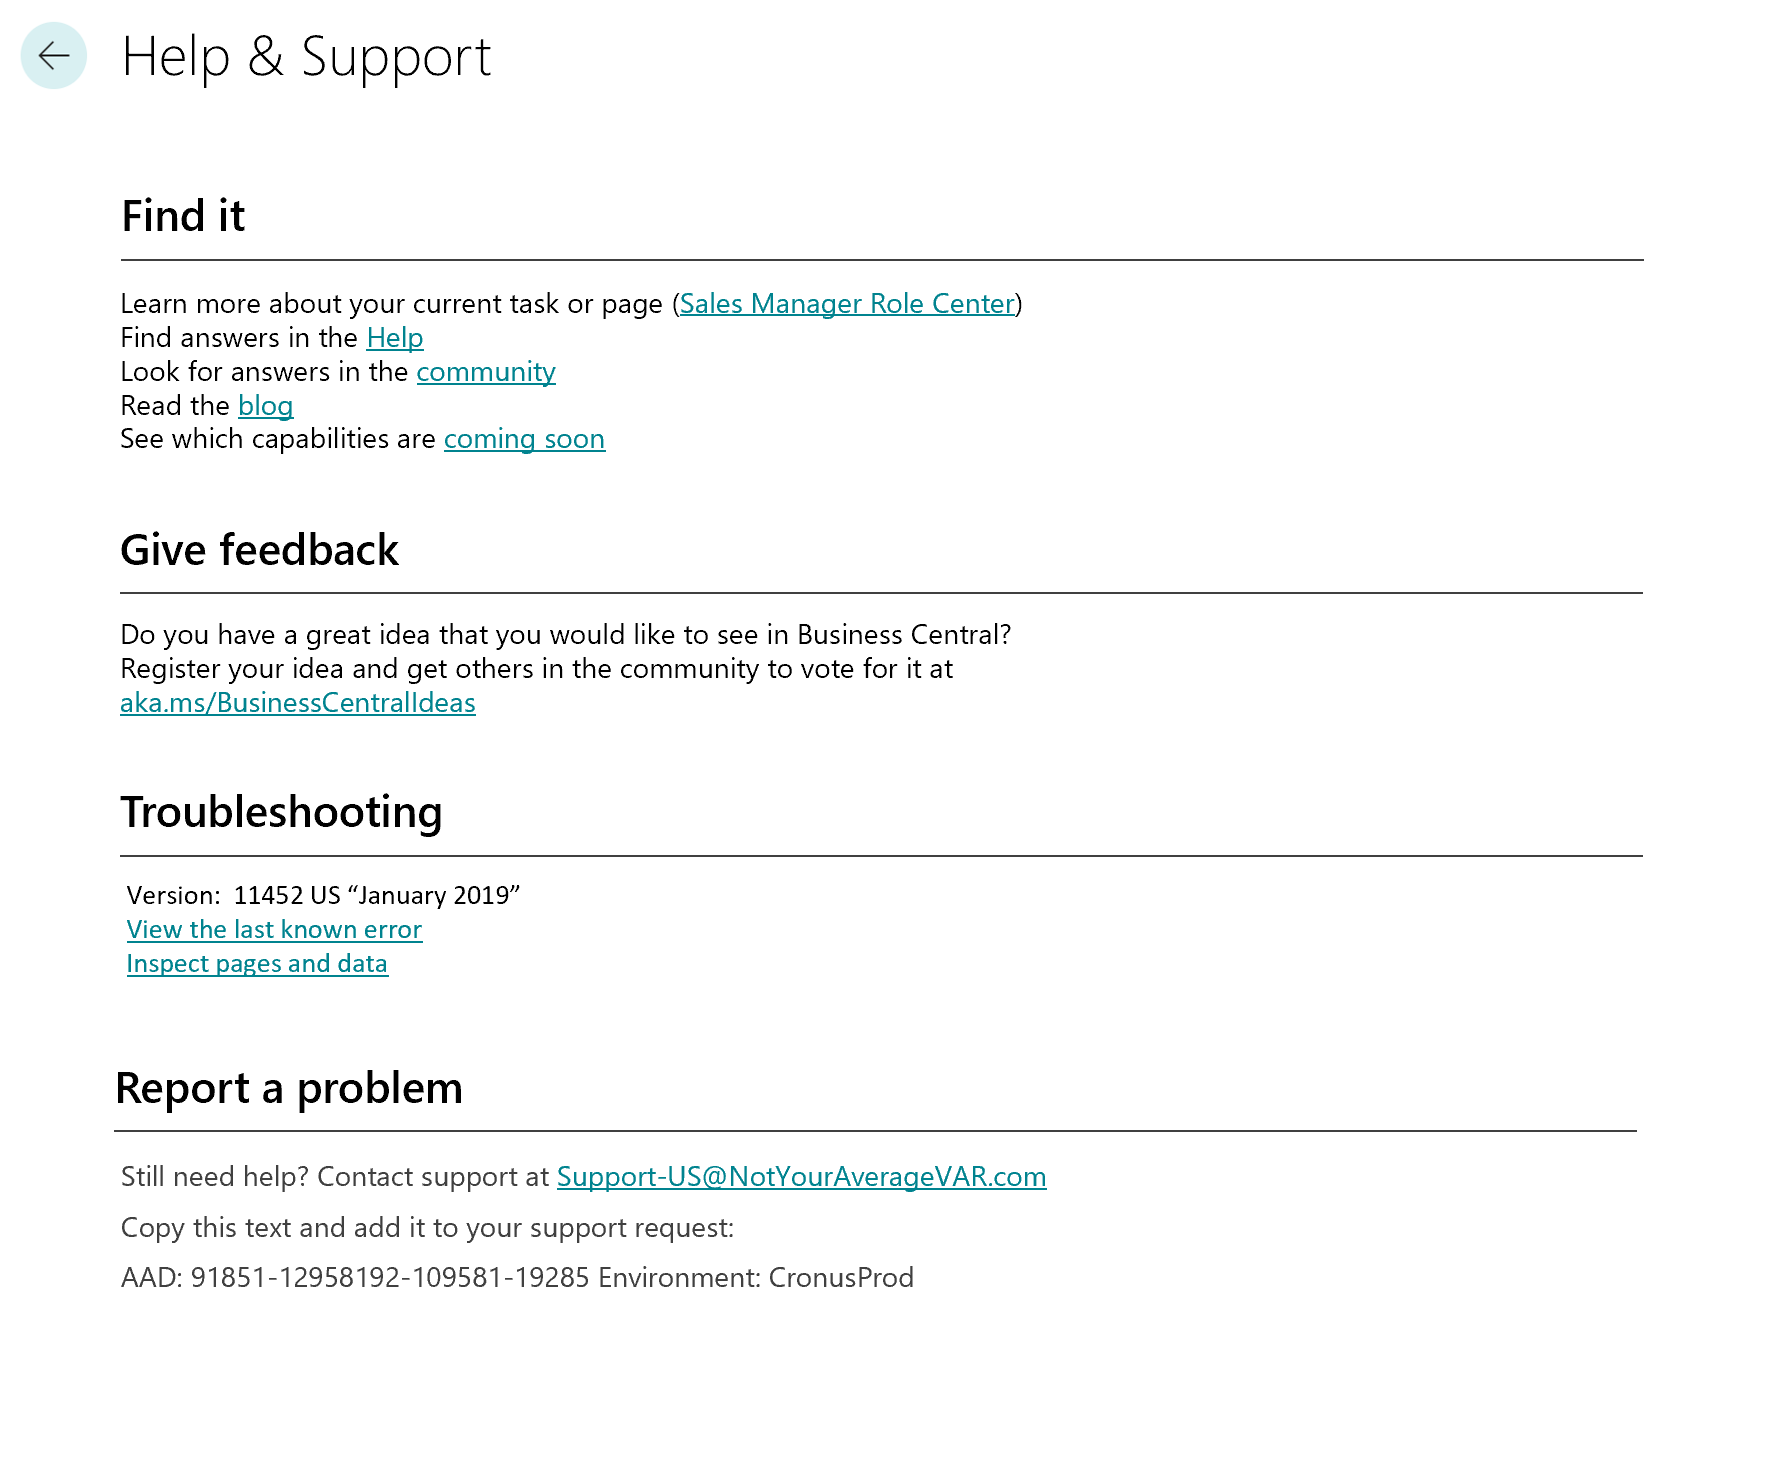 Concetto di progettazione per la nuova schermata di aiuto e supporto in-app che mostra una serie di collegamenti per utilizzare self-help, fornire commenti, risolvere i problemi o contattare il supporto